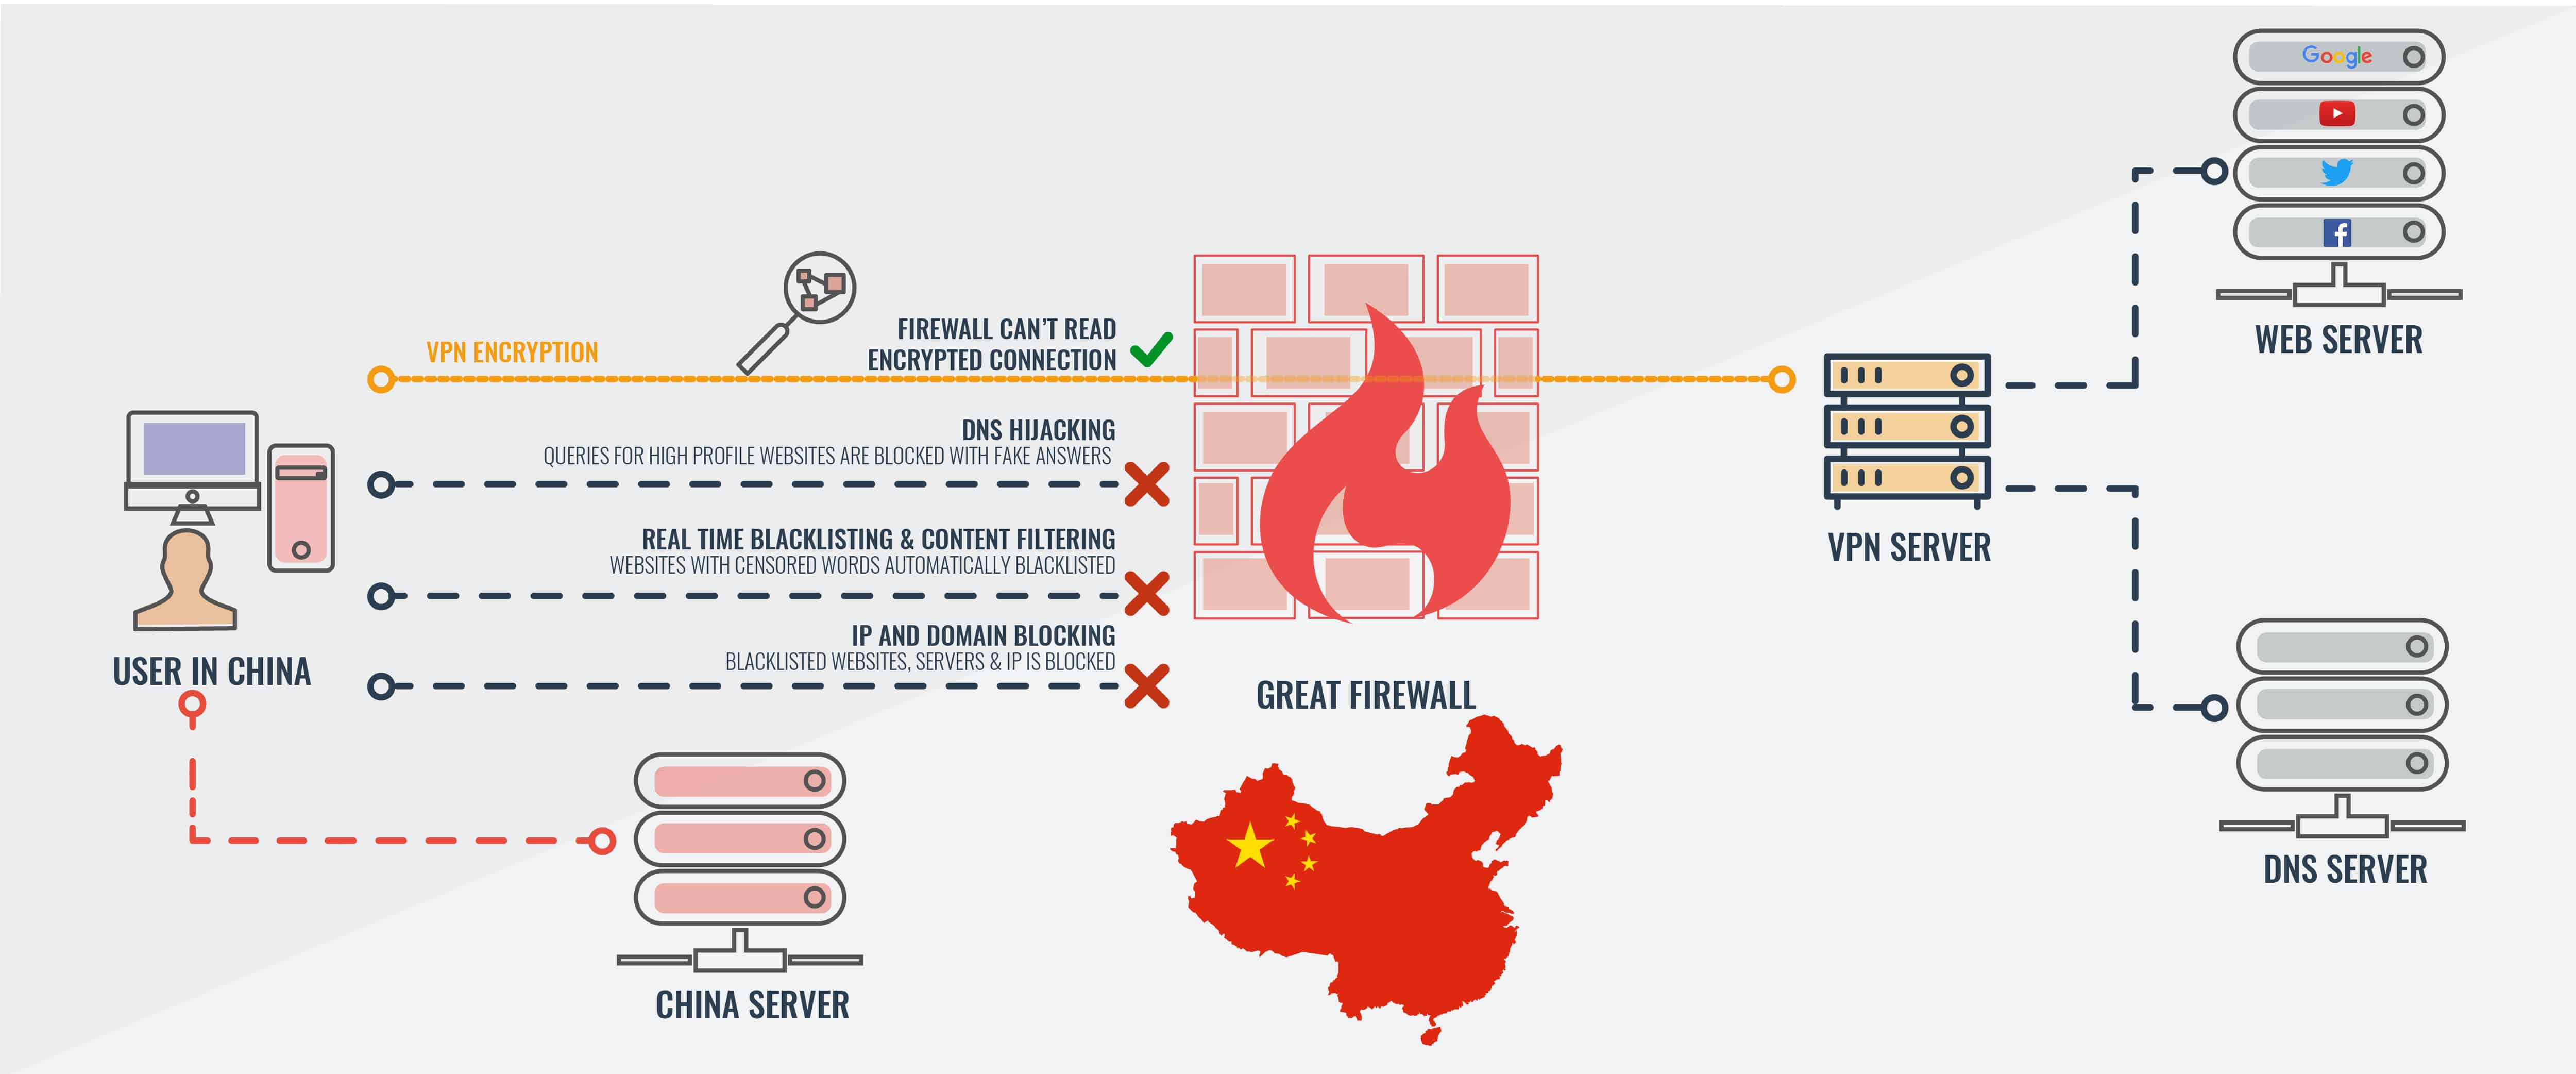 internet access in china vpn mac